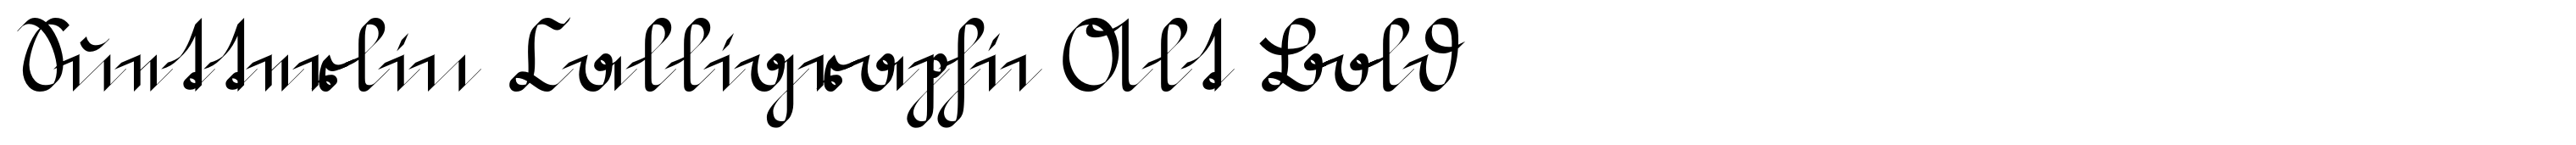 Suetterlin Calligraphic Alt Bold